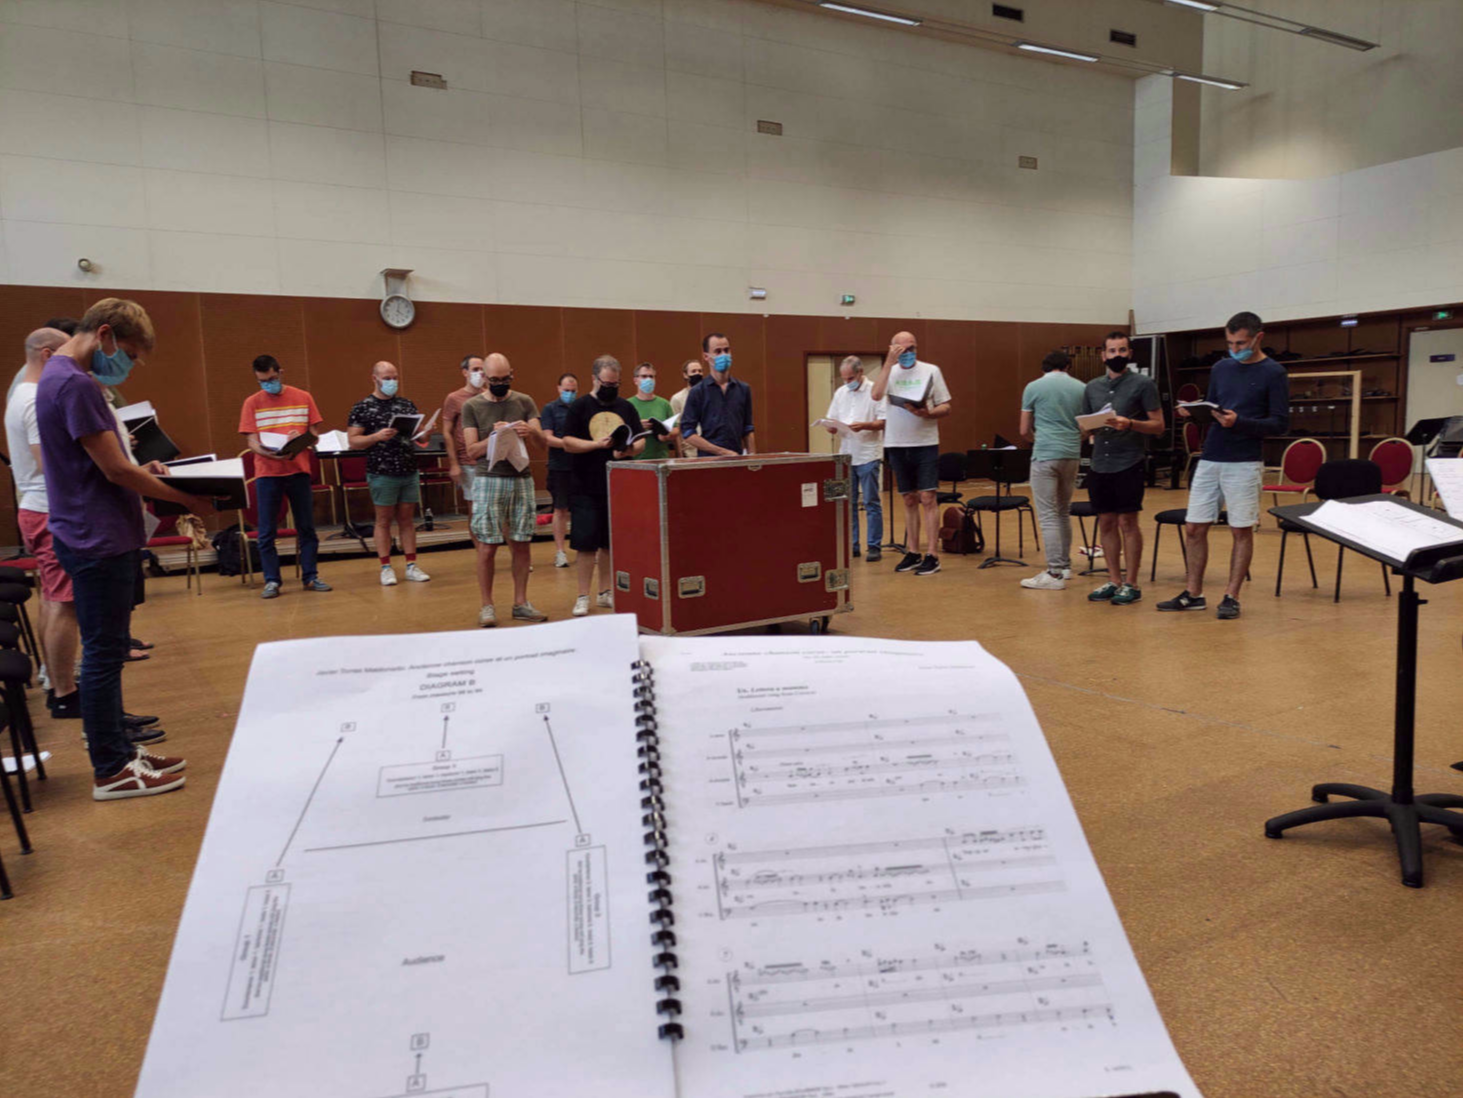 Rehearsal of Anceinne chanson corse, Lyon 2021